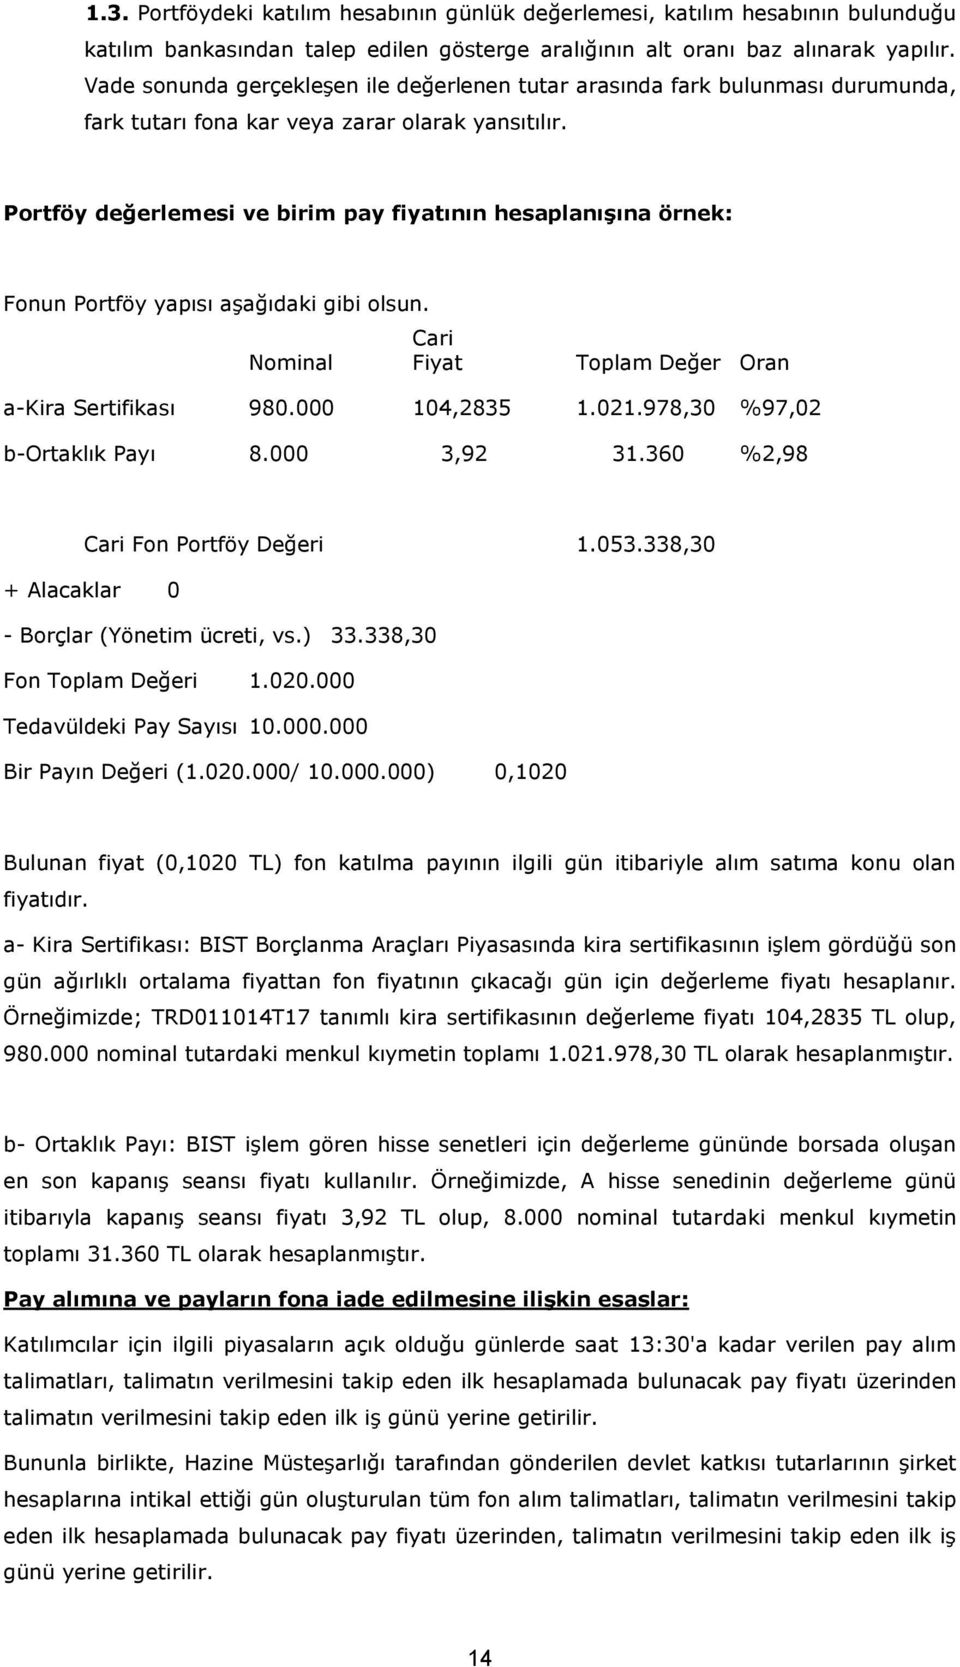 Portföy değerlemesi ve birim pay fiyatının hesaplanışına örnek: Fonun Portföy yapısı aşağıdaki gibi olsun. Cari Nominal Fiyat Toplam Değer Oran a-kira Sertifikası 980.000 104,2835 1.021.